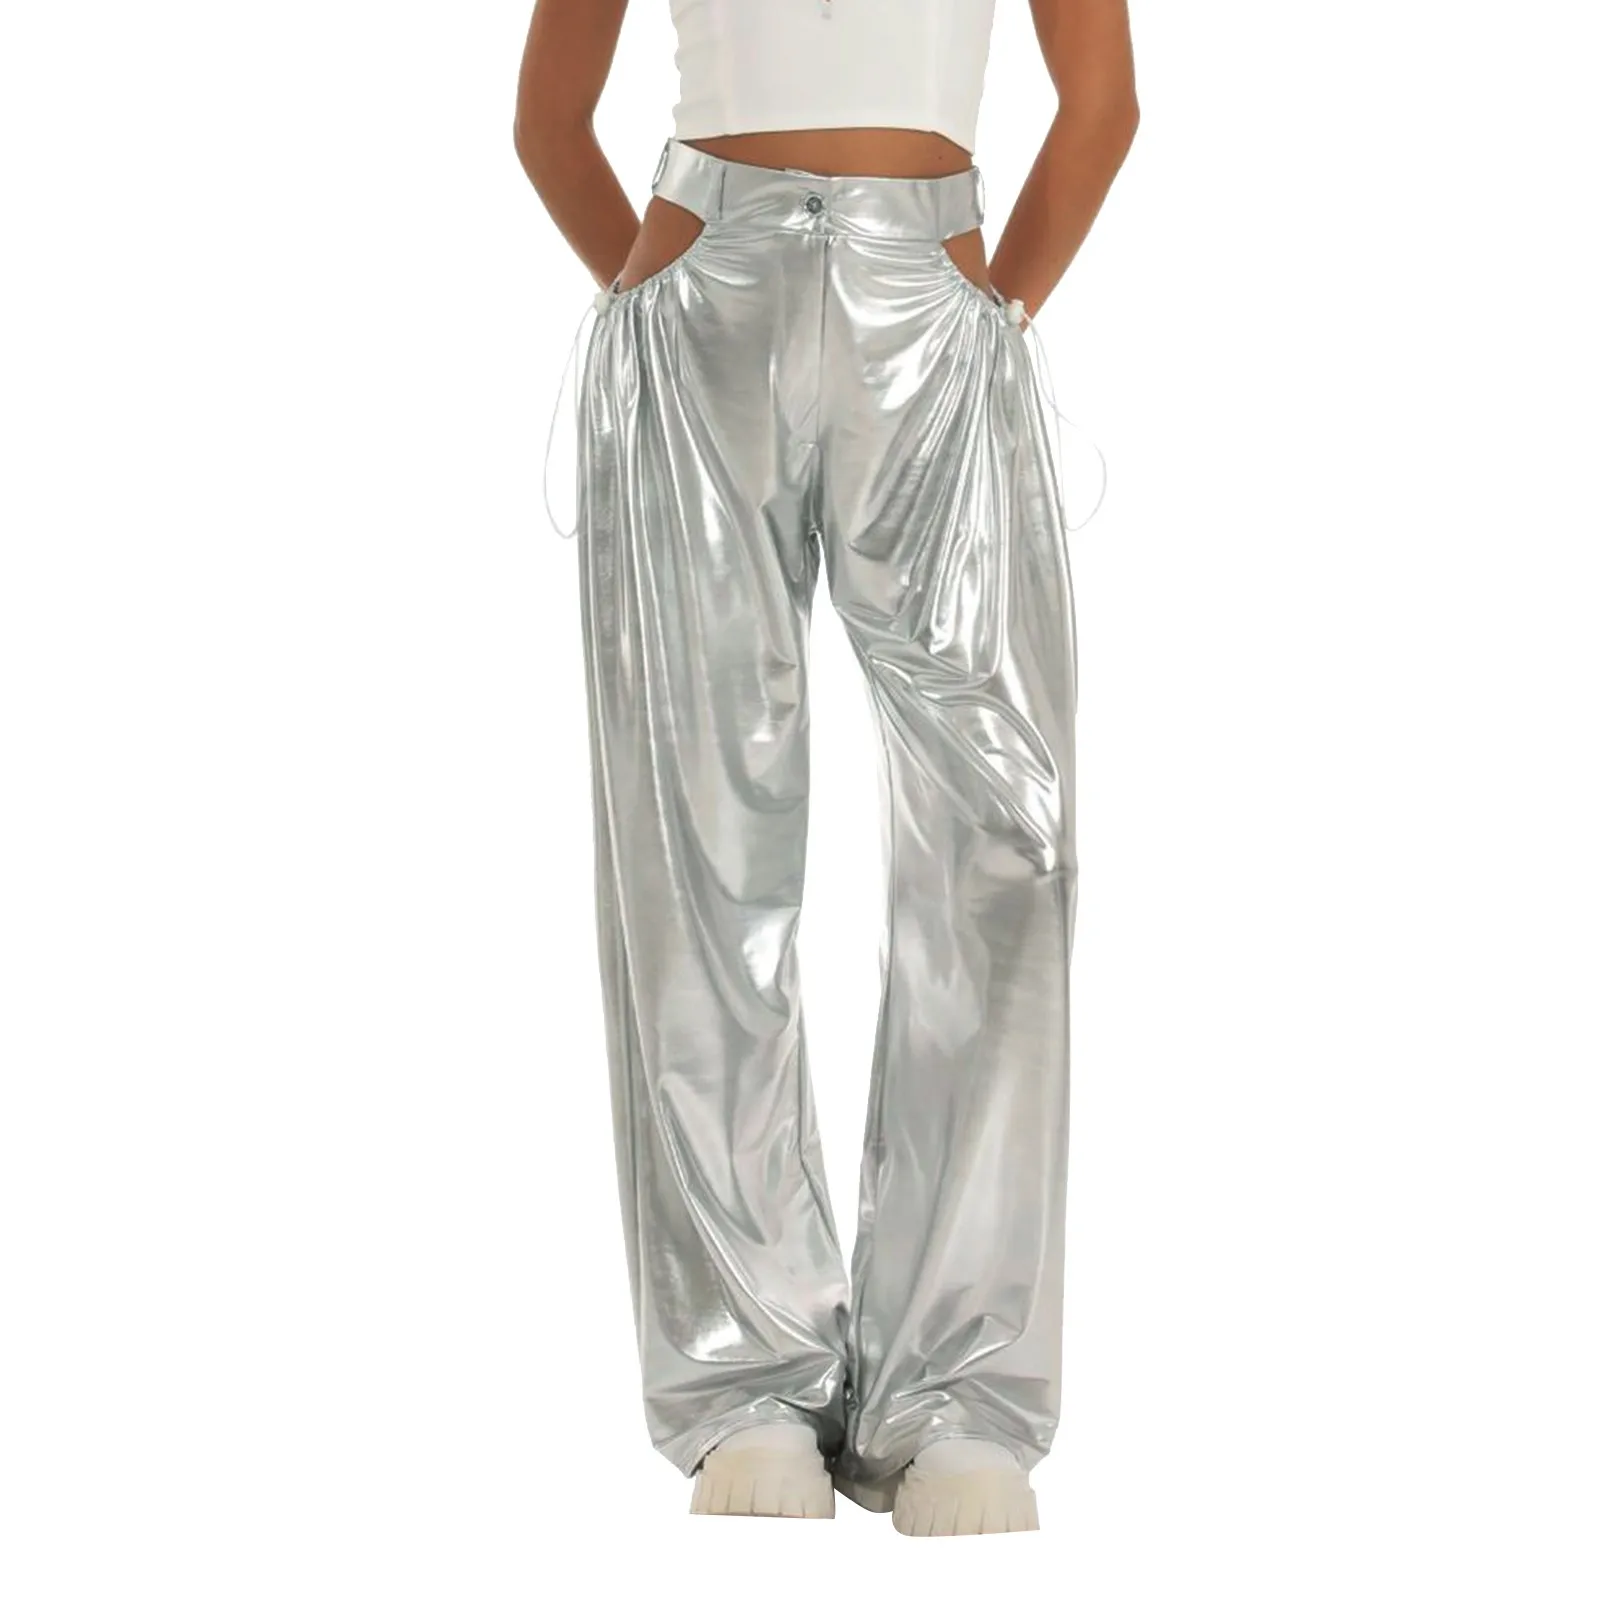 

Женские однотонные брюки с металлическим блеском, женские летние длинные брюки из искусственной кожи, свободного кроя, в стиле чувственной девушки, праздничный наряд с вырезами